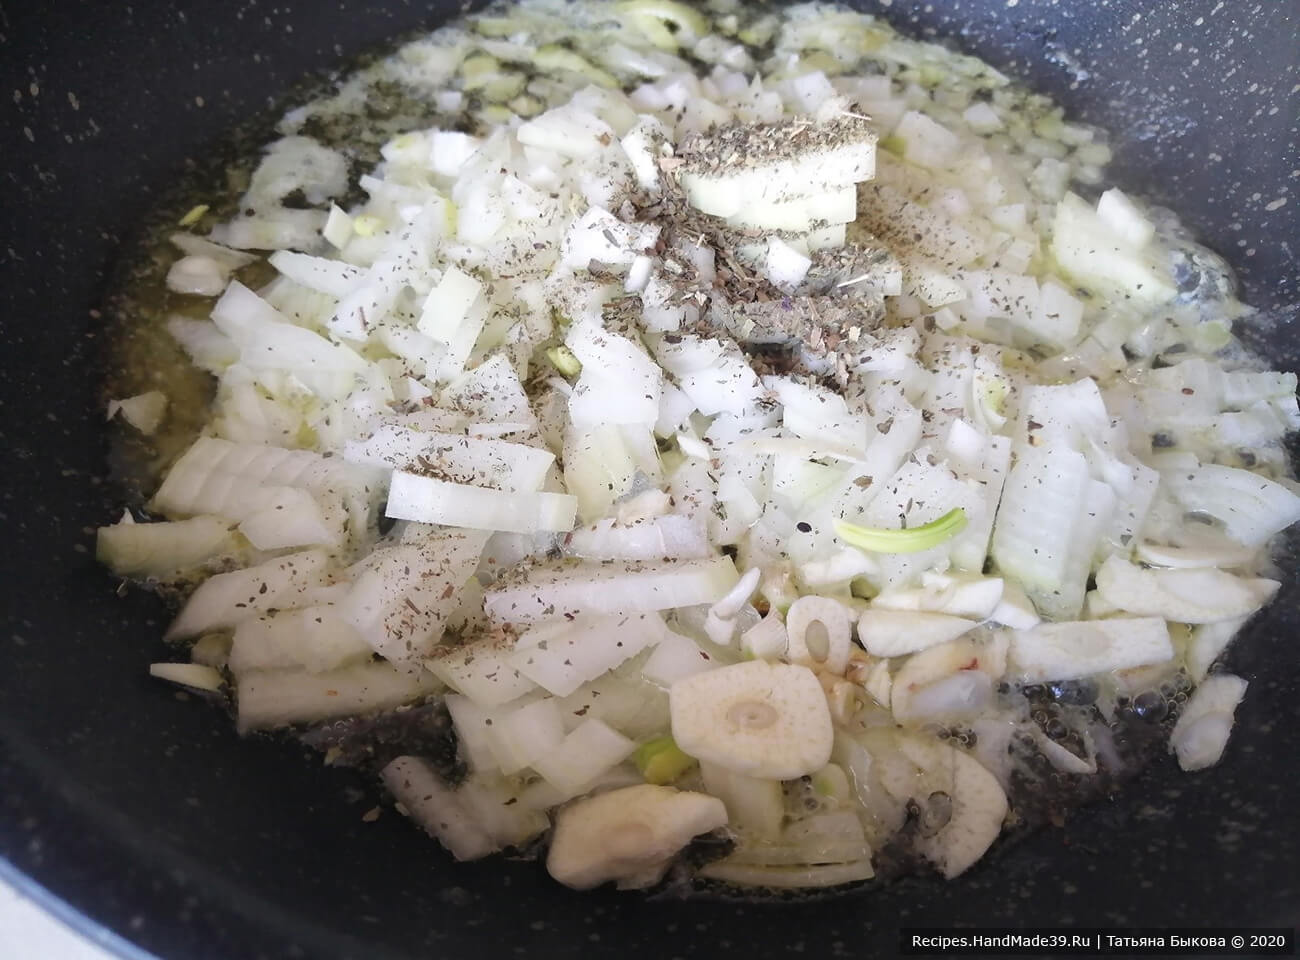 Приготовление клюквенного соуса для оленины: Растопим сливочное масло и добавим к нему мелко порезанный лук, свежий чеснок и немного базилика